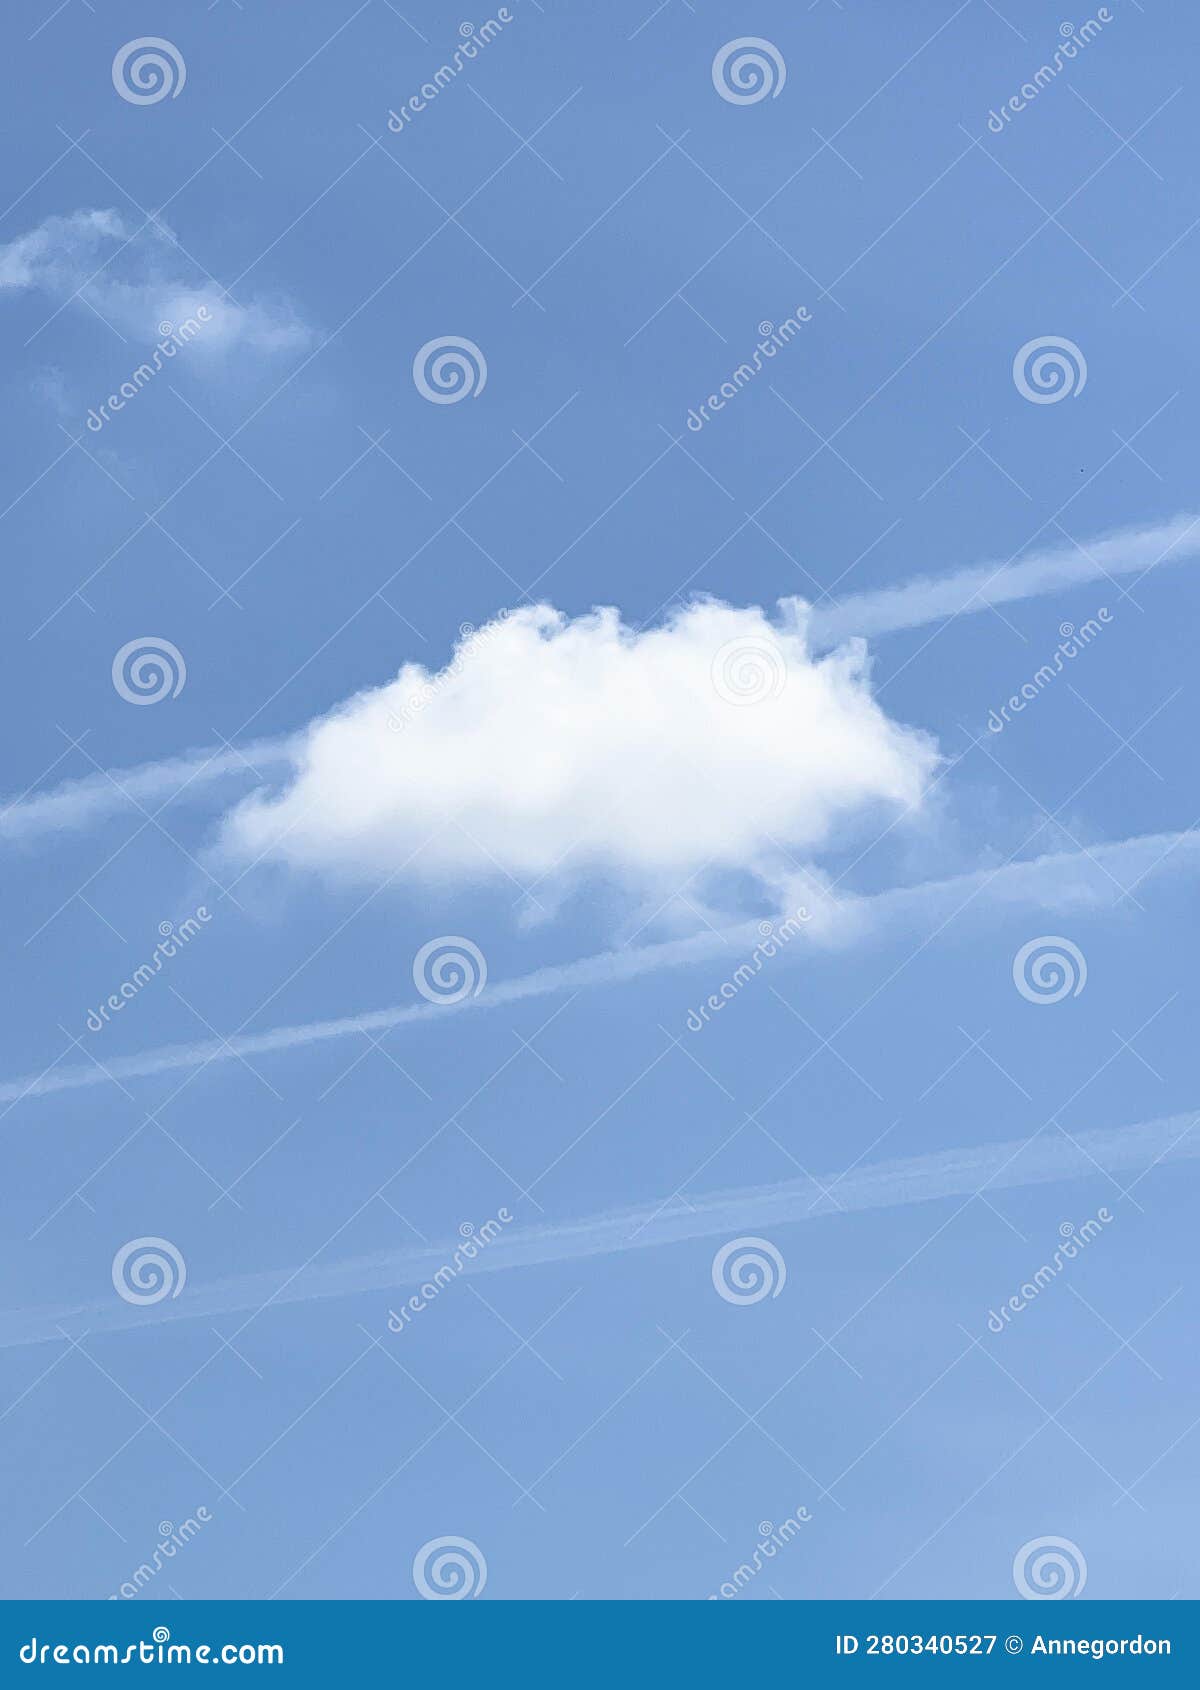 estela de condensaciÃ³n o rastro defractario. estelas y nube en cielo azul.